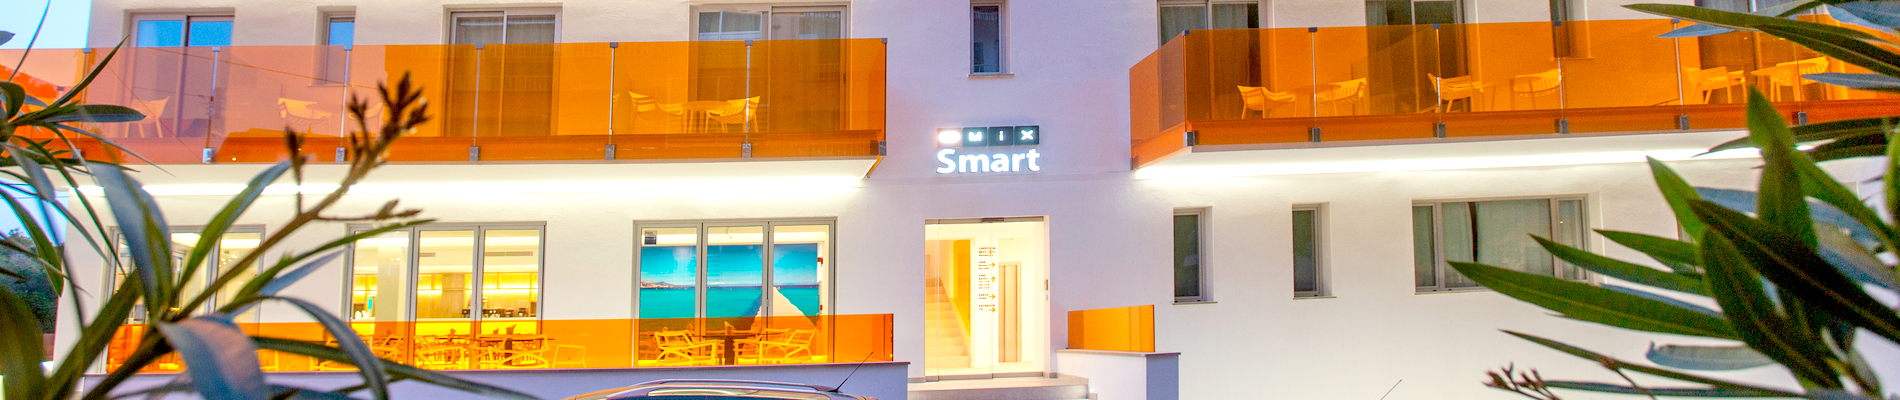 Treffen Sie das Mix Smart Hotel auf Mallorca